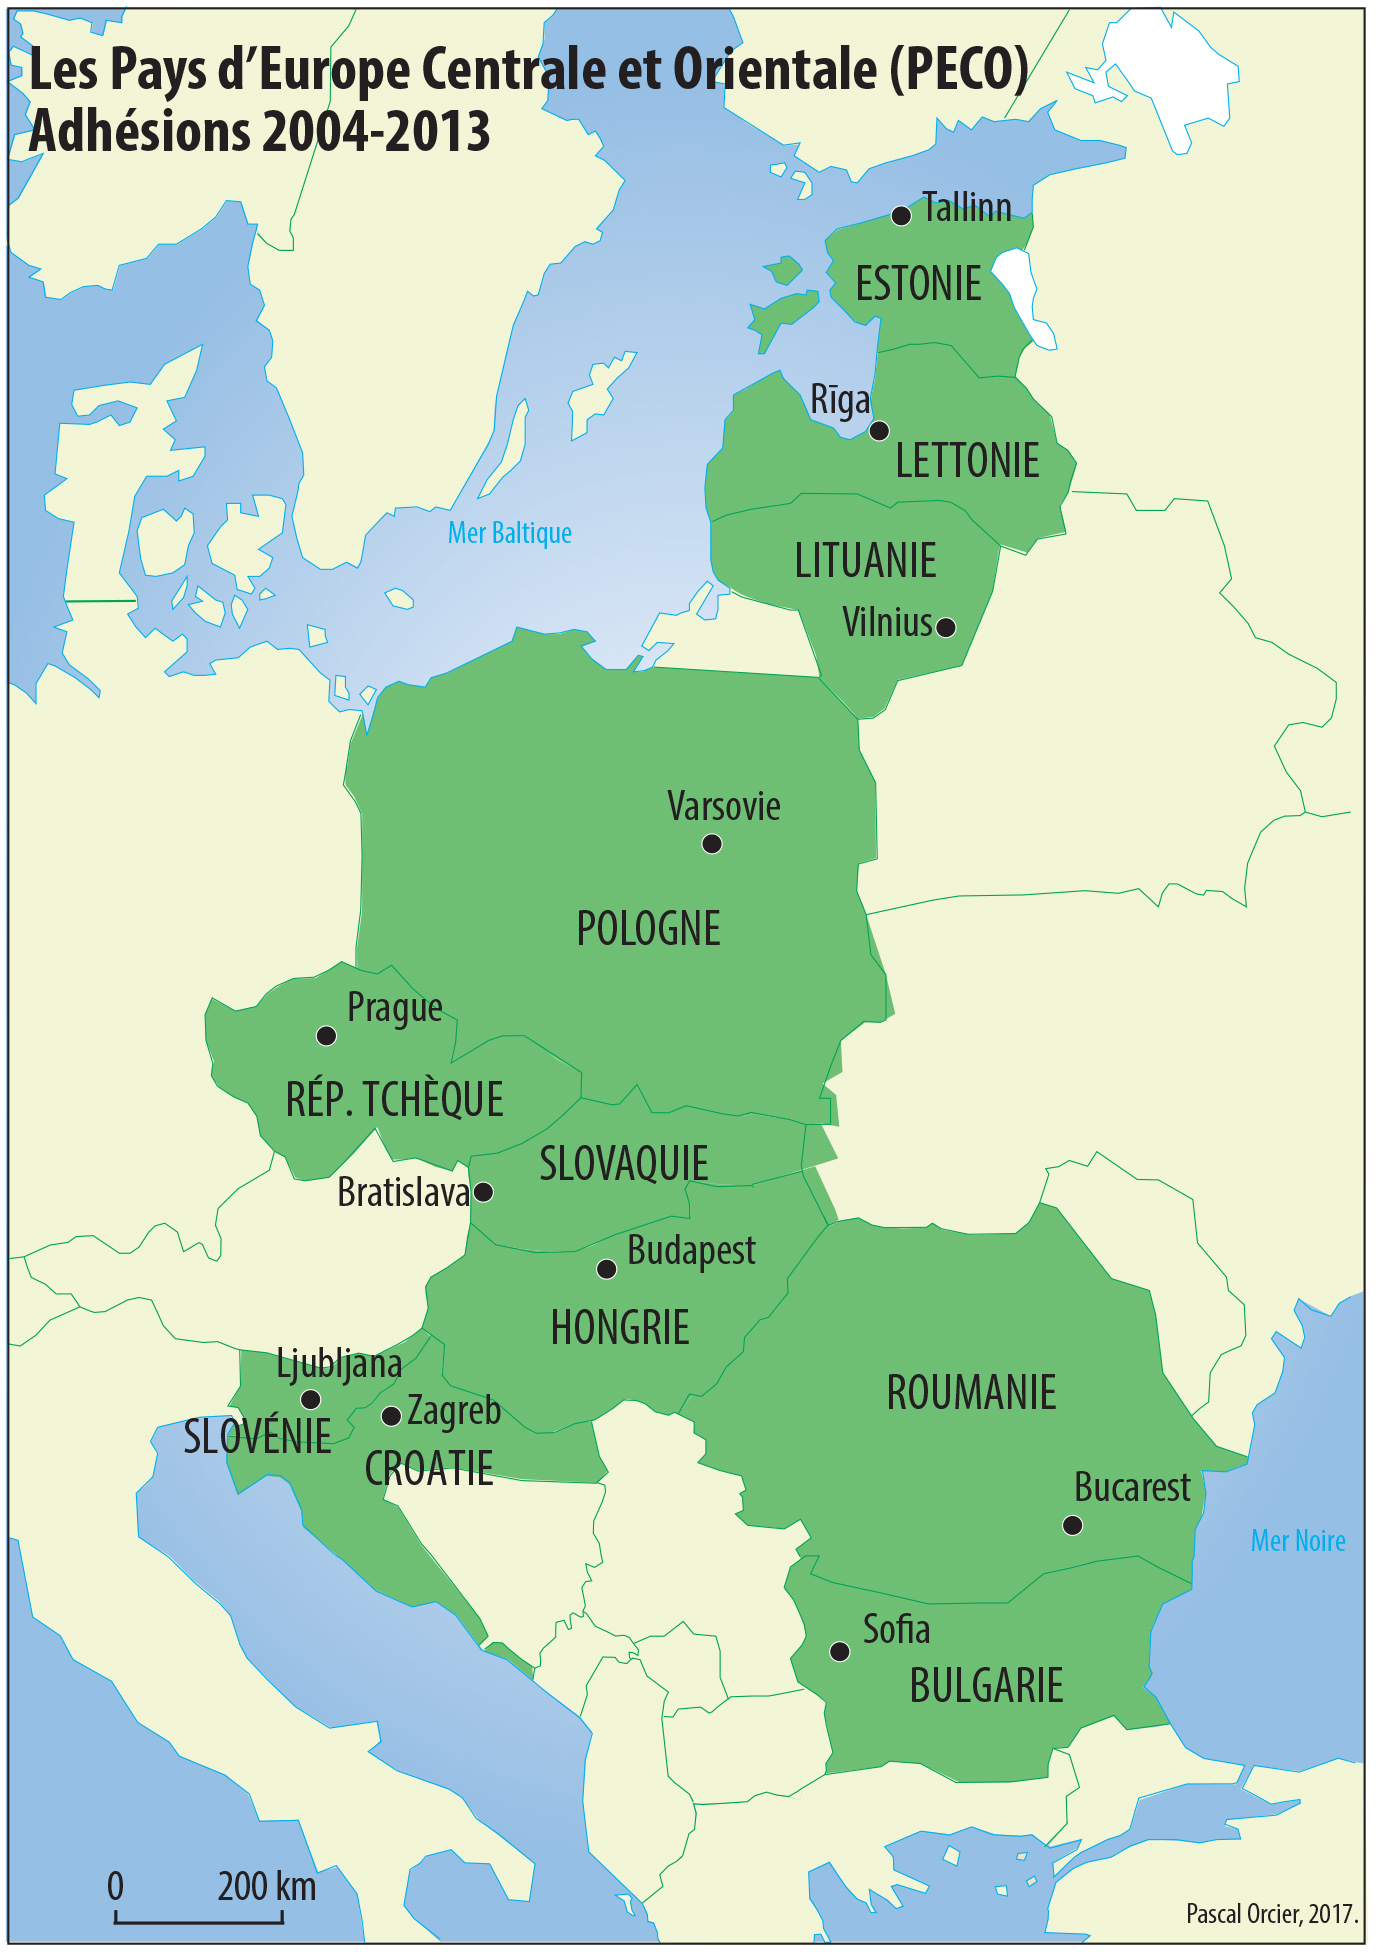 Les pays d'Europe Centrale et Orientale (PECO) adhésion Union européenne